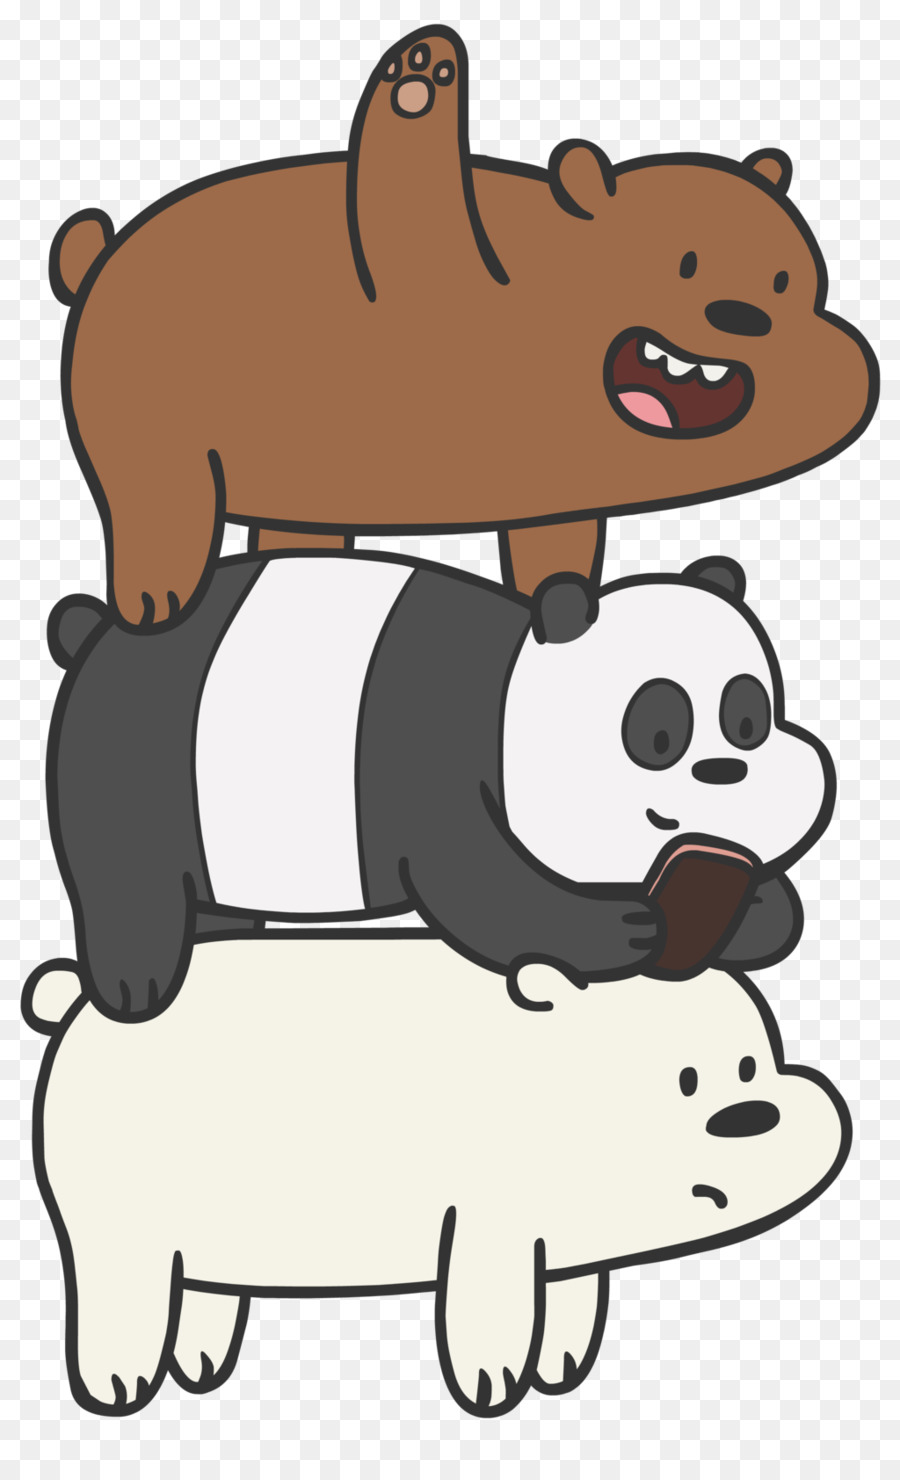 Polar-Bär-panda-YouTube-Cartoon Network - Bären